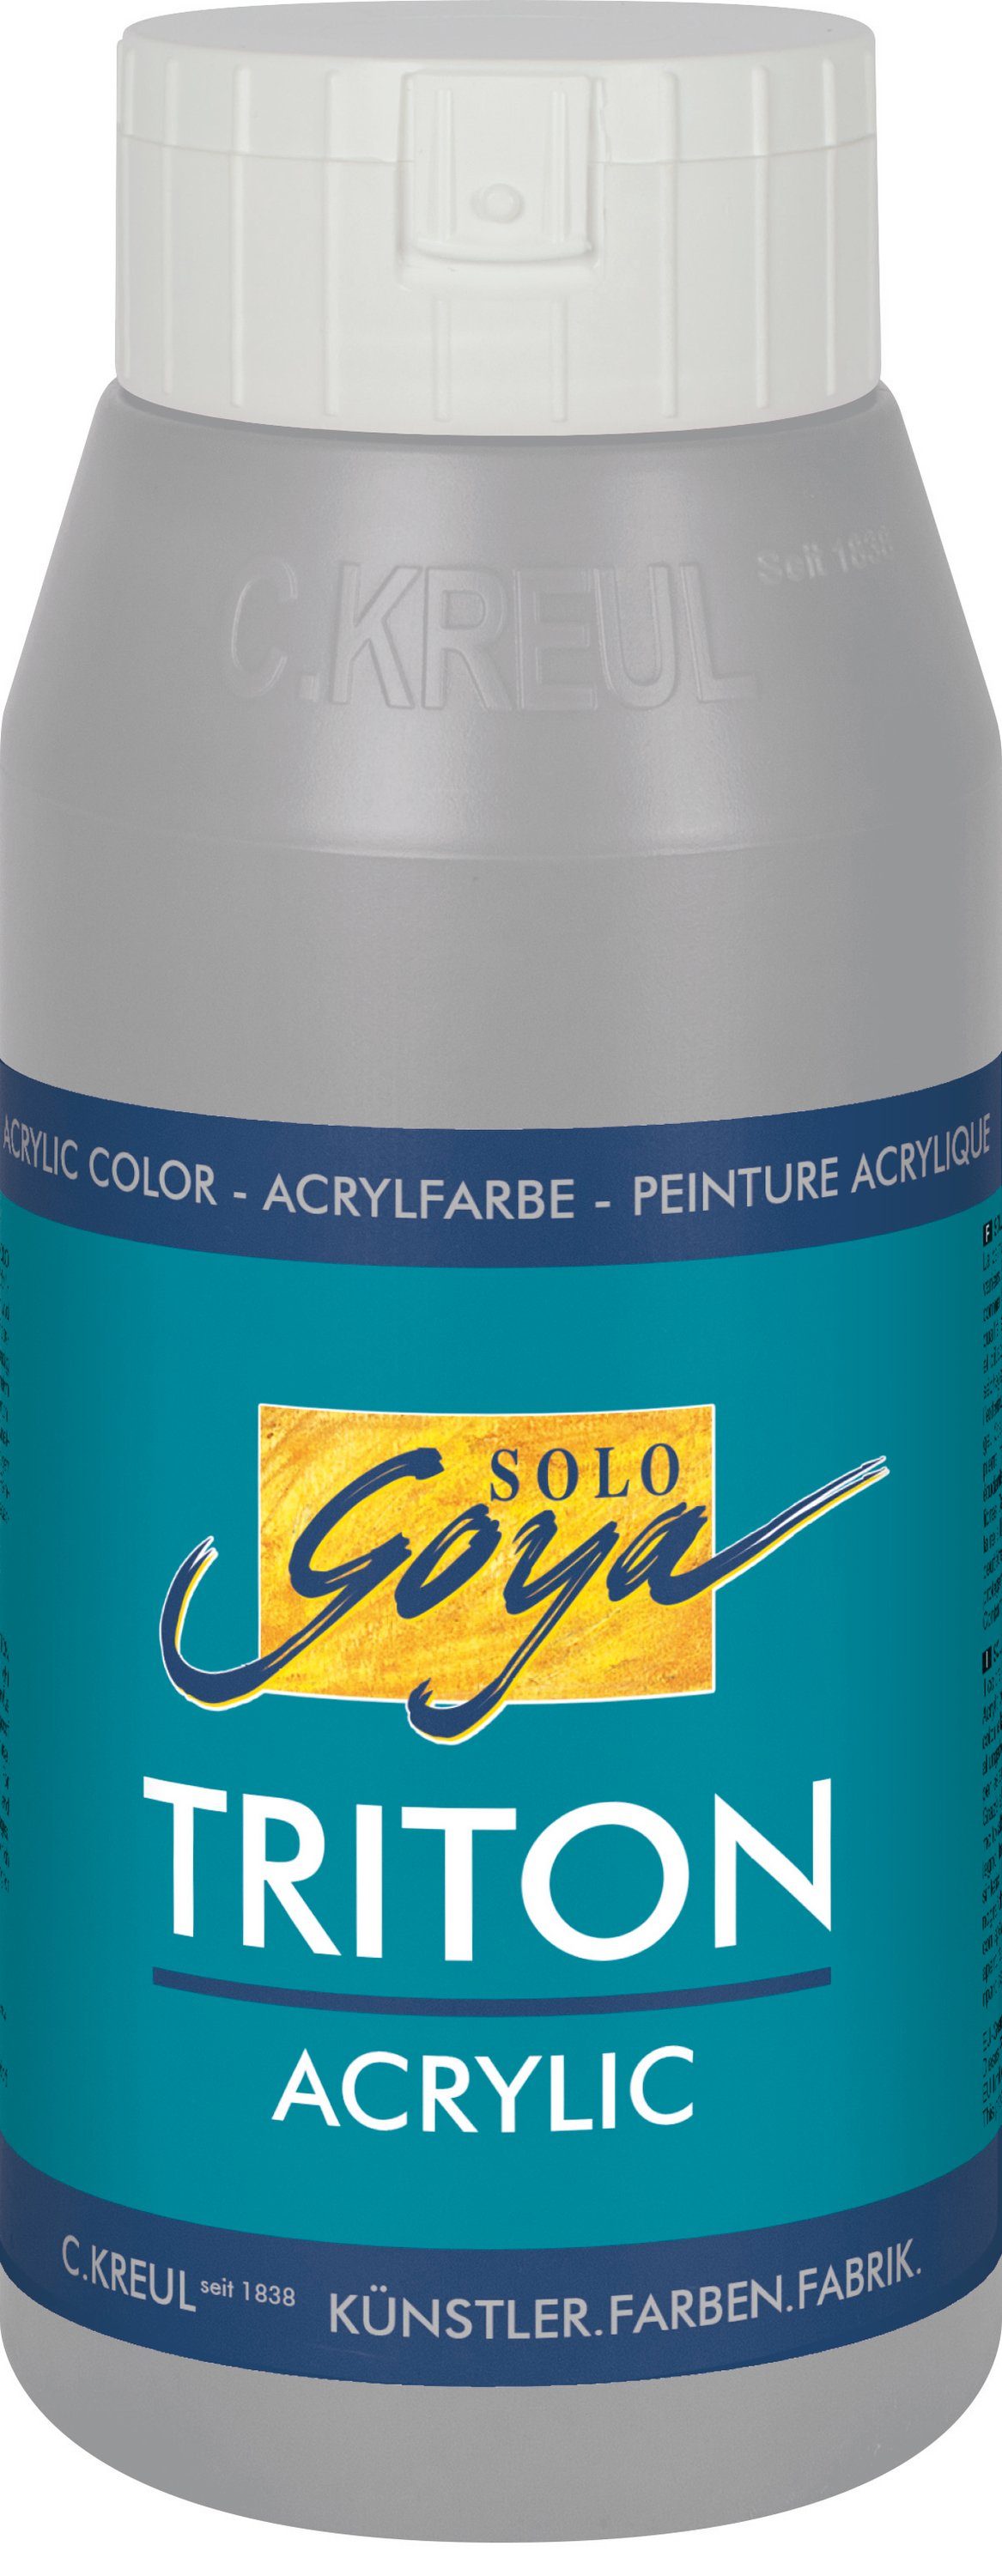 Acrylfarbe ml Triton Kreul Solo 750 Neutralgrau Goya Acrylic,